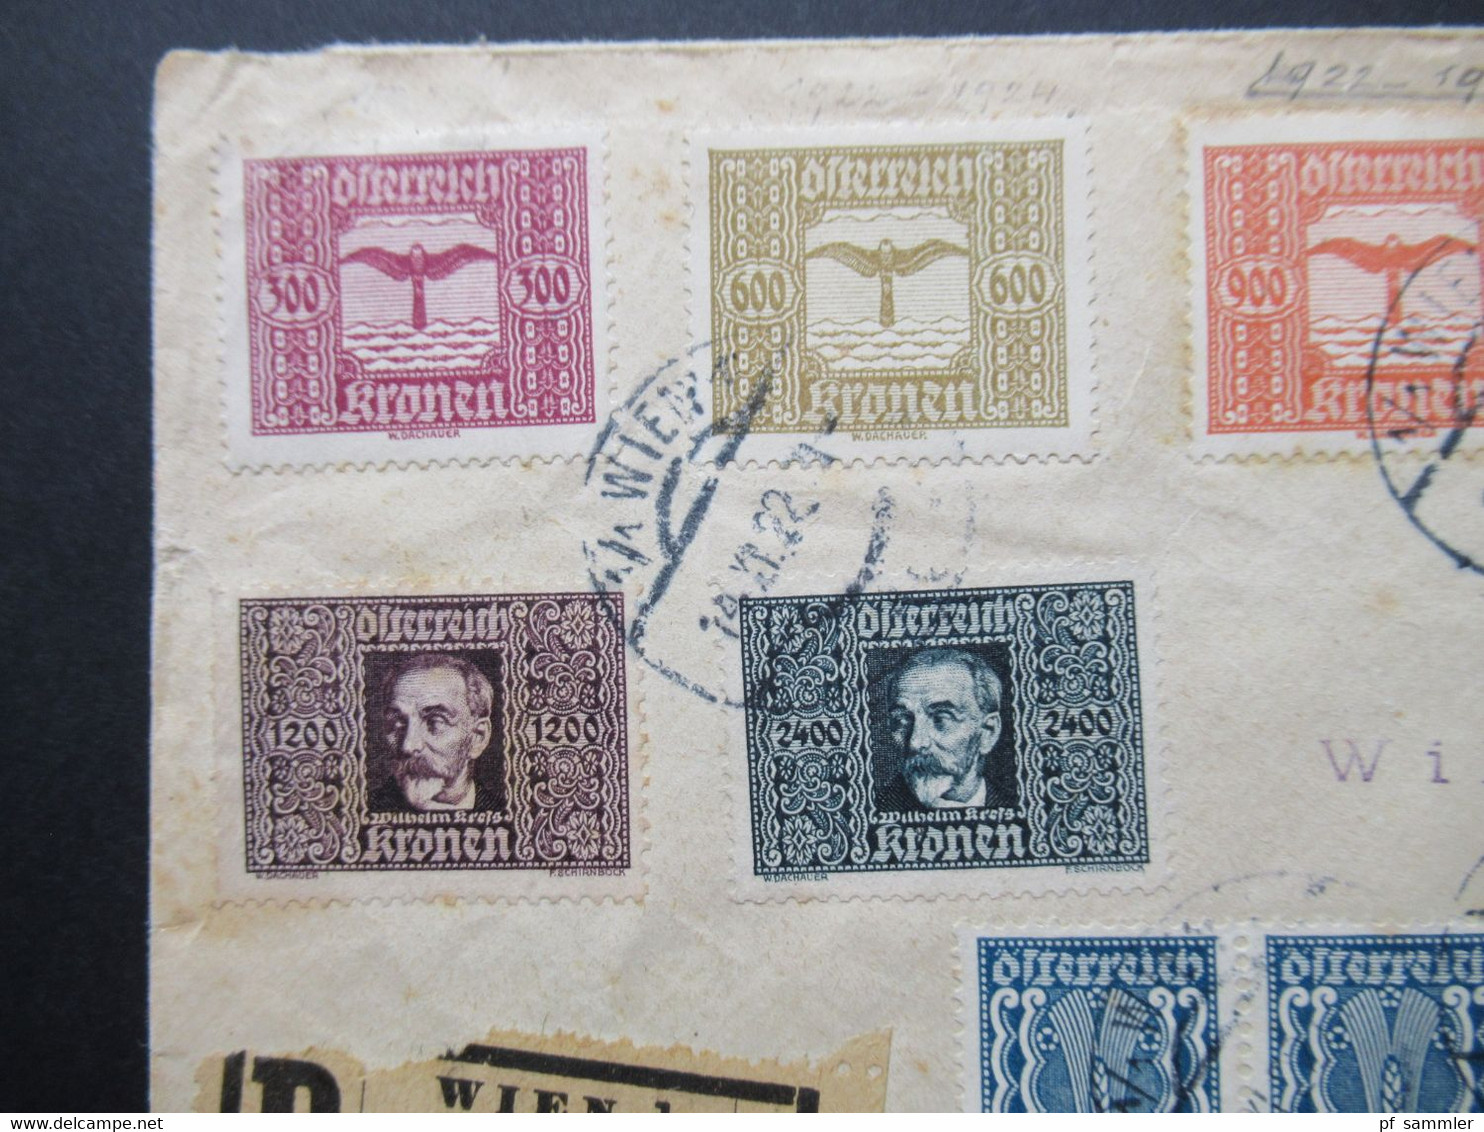 Österreich 1922 Flugpostmarken Einschreiben Wien 1 Mit Flugpost über Strassburg Stp.* Flug ausgefallen * an Sellschopp